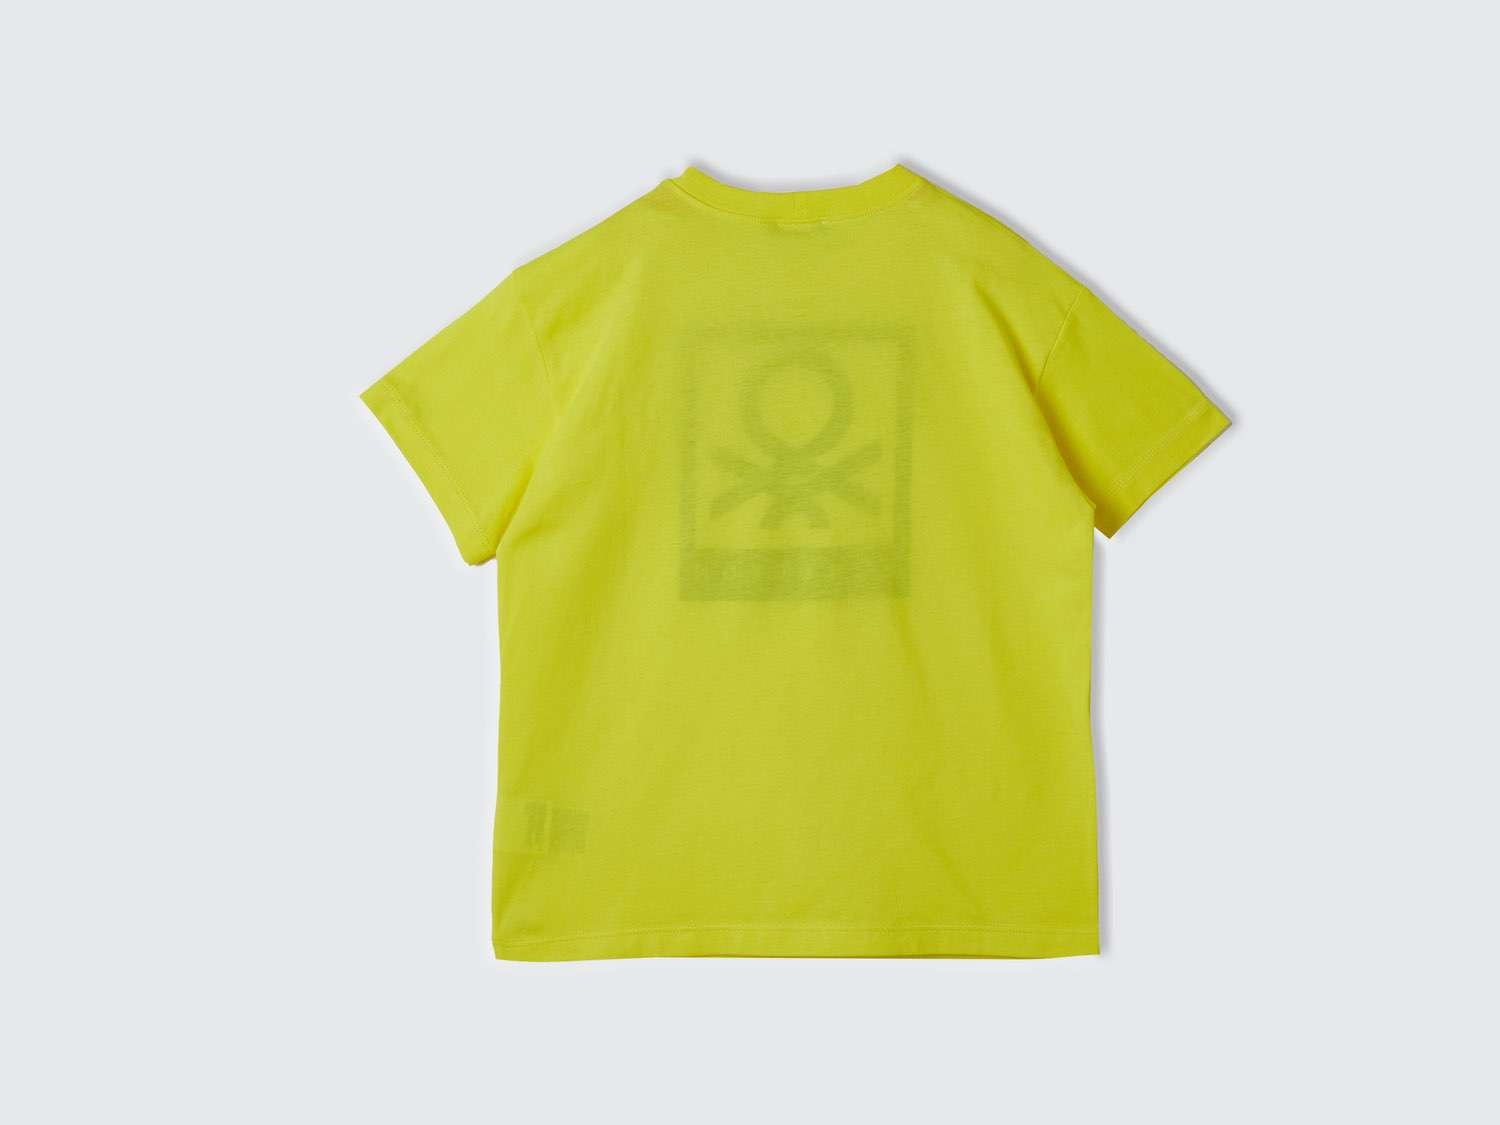 Benetton Erkek Çocuk Neon Sarı Benetton Logolu Su Baskılı T-Shirt